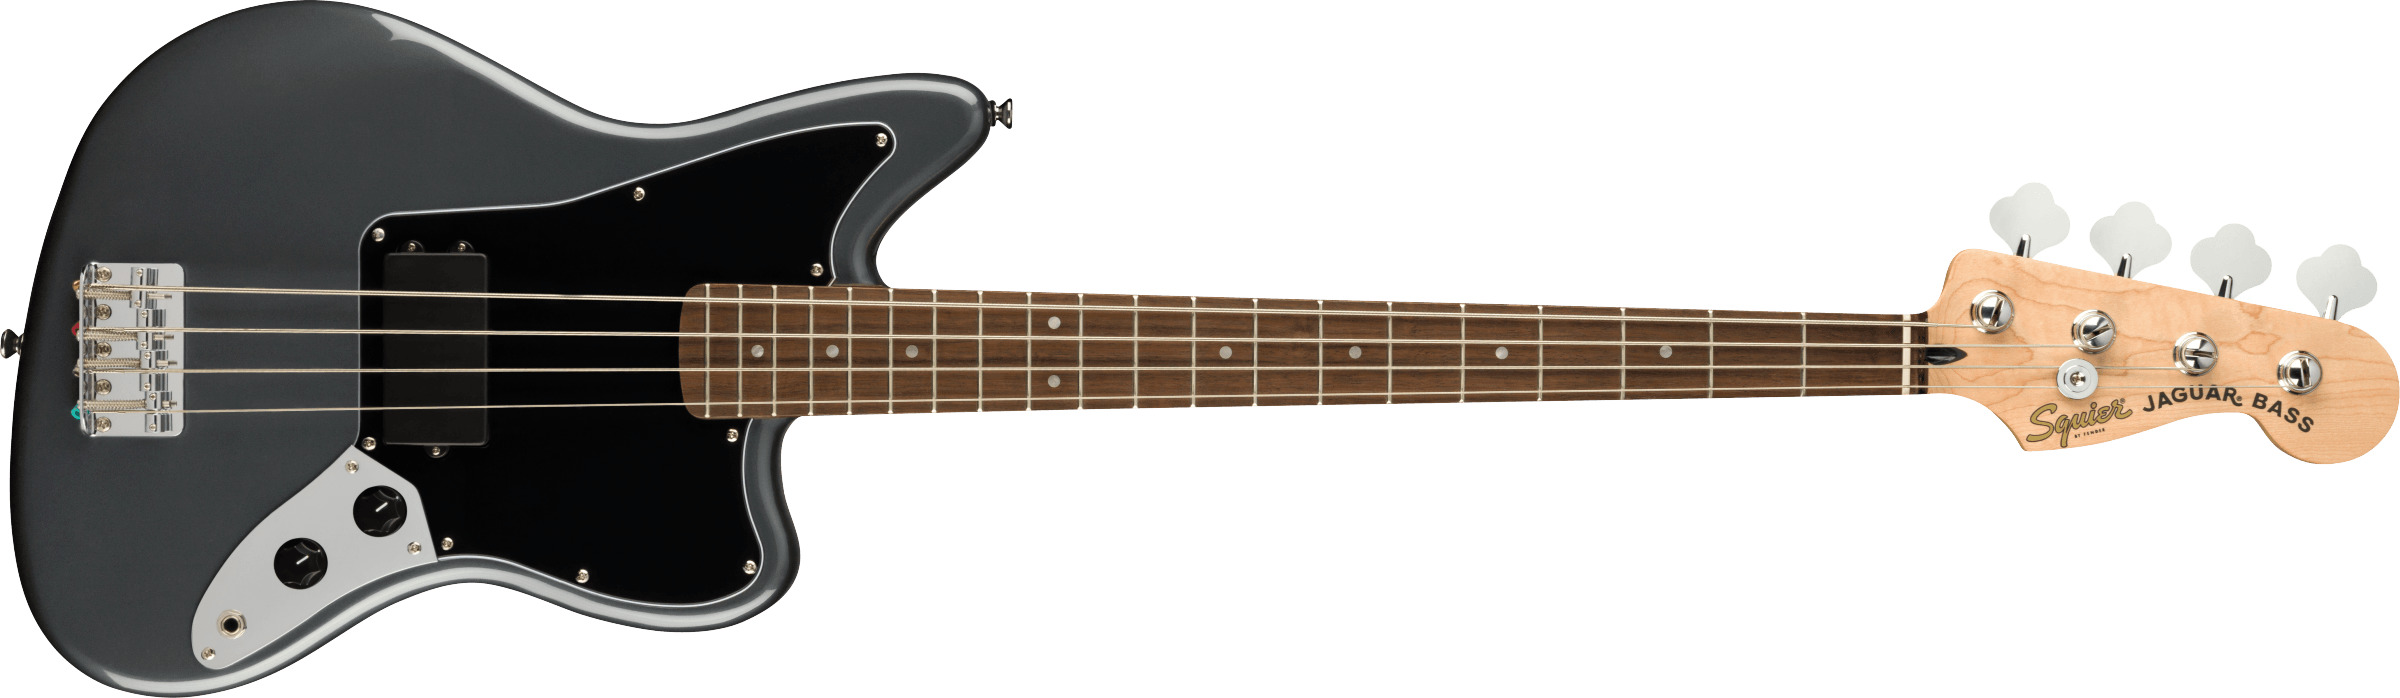 Fender Squier Affinity Jaguar elektrisk bass